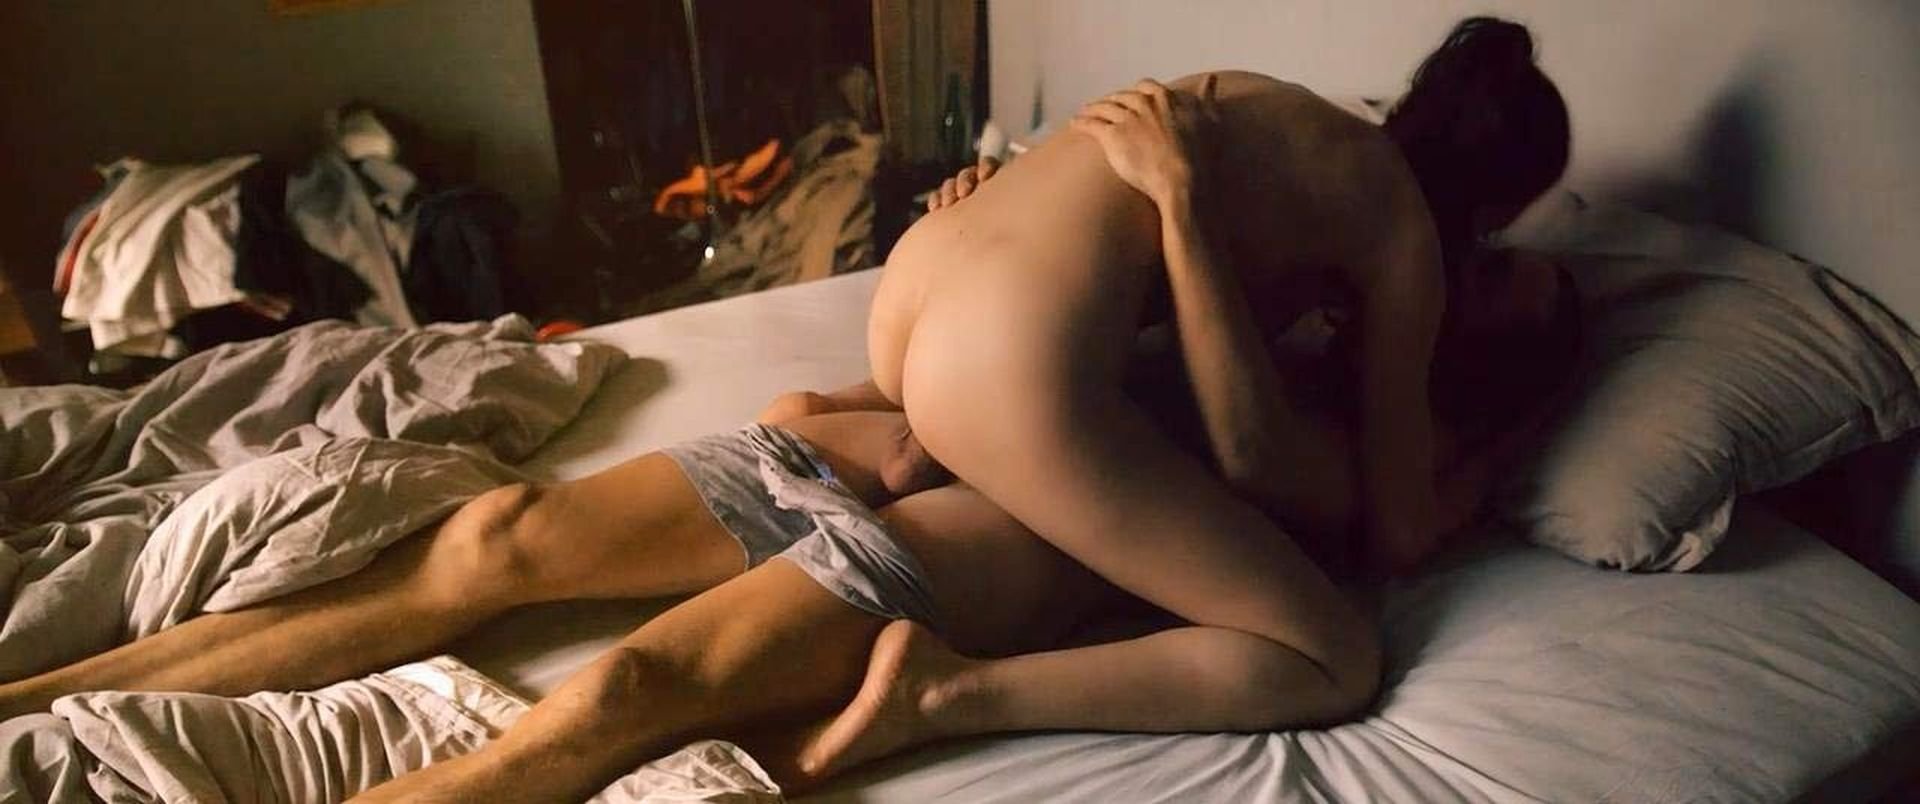 Amikor Öcsi Szenved A Viagrától A Jó Nővér Segít - Online szex videók pornó film